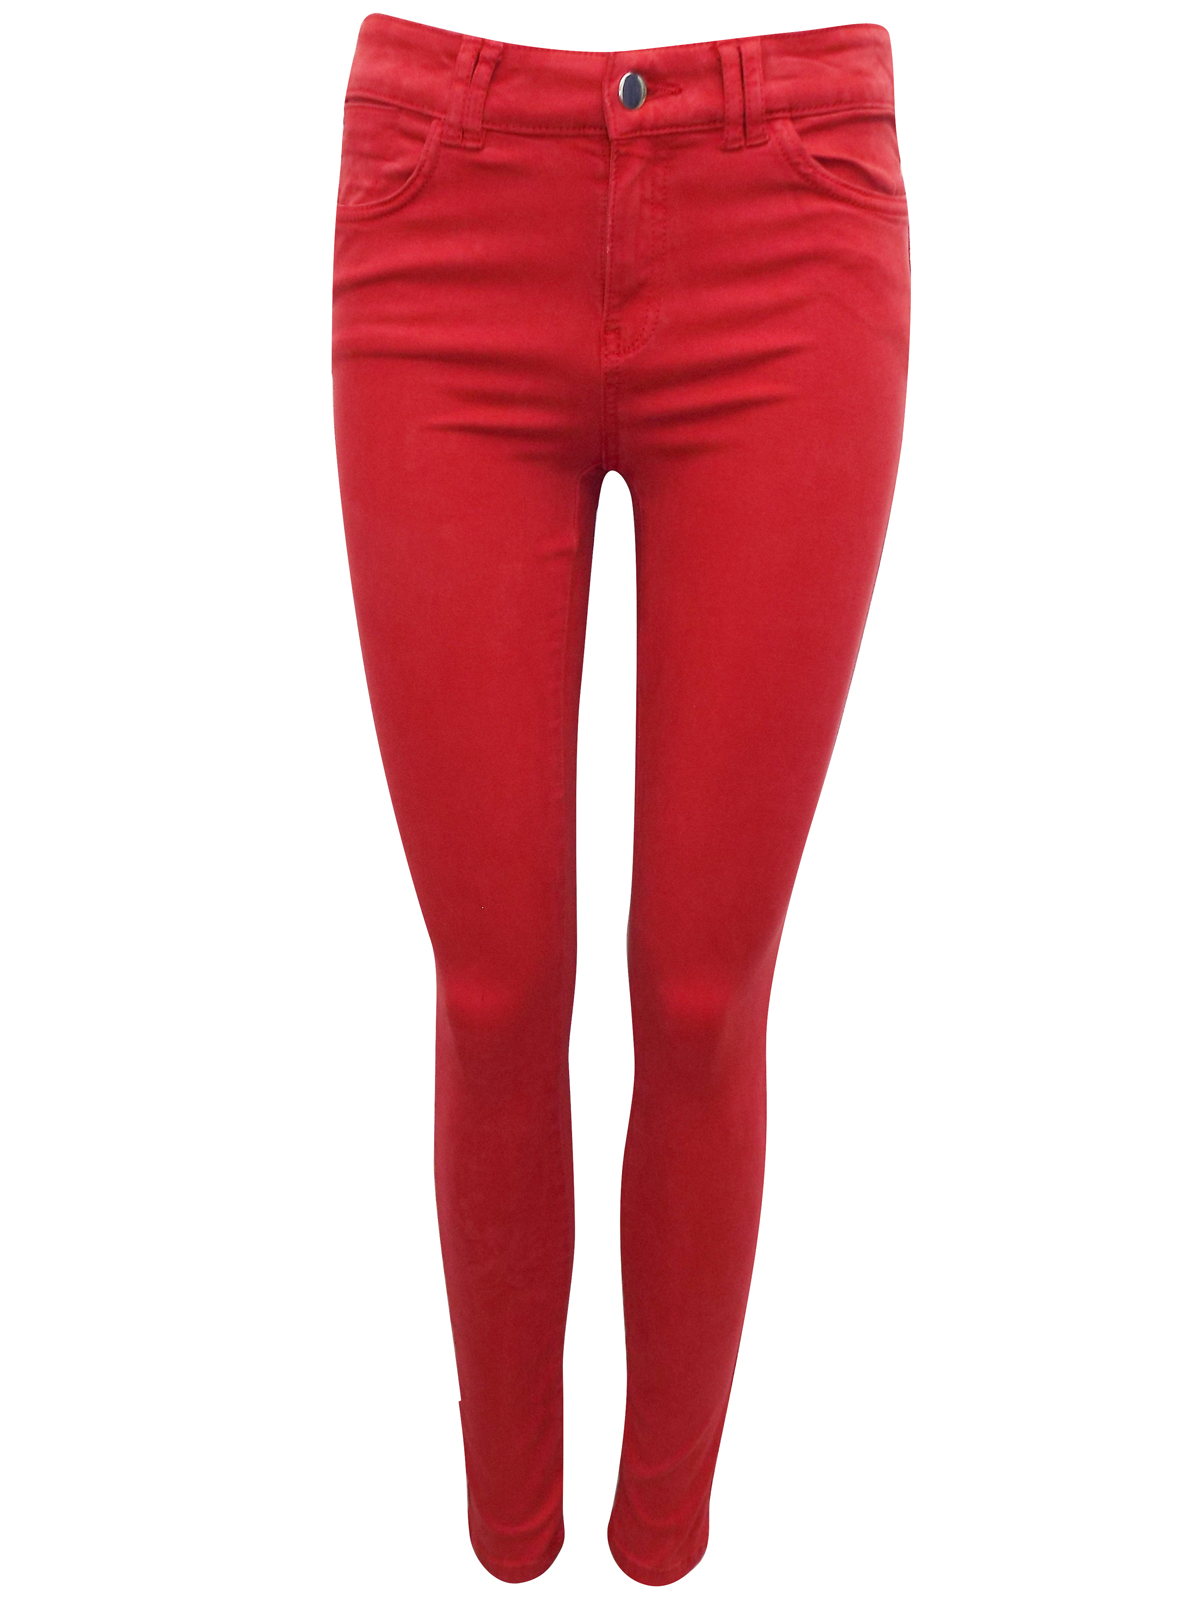 Clockhouse RED 5-Pocket Super Skinny Denim Jeans - Size 8 to 16